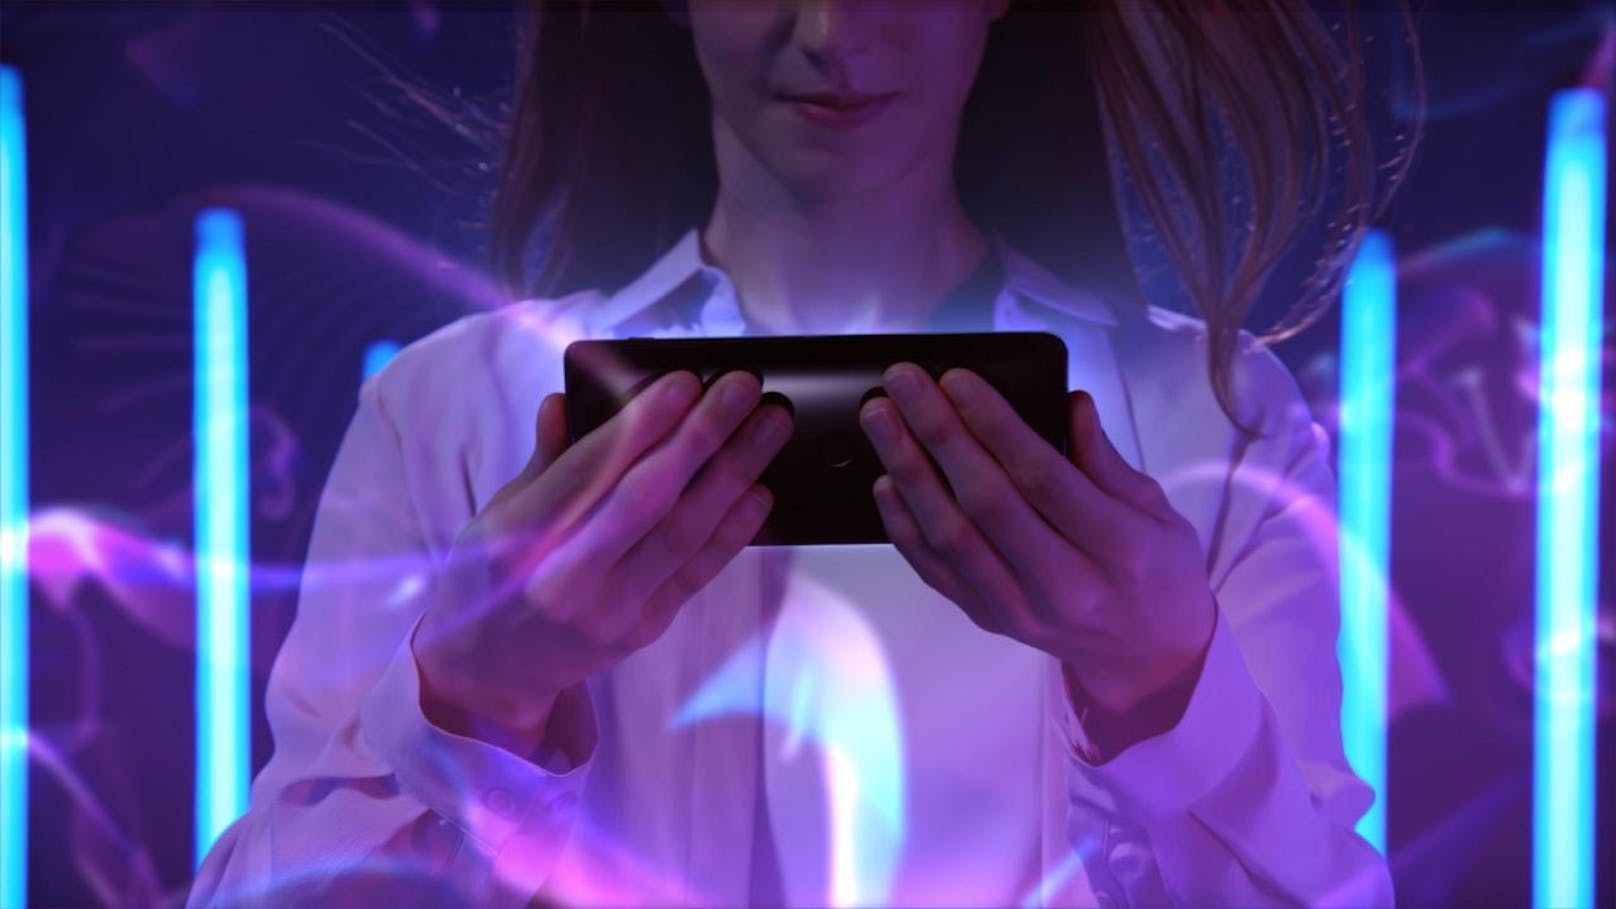 Sony Mobile präsentiert das neue Premium-Smartphone Xperia XZ3. Das Xperia XZ3 ist das erste Smartphone von Sony mit OLED-Technologie, die in Verbindung mit der BRAVIA TV Technologie für eine noch realistischere Darstellung von Farben und Kontrast sorgt. Das randlose, geschwungene Display besteht ebenso wie die Rückseite des Xperia XZ3 aus Corning Gorilla Glas 5. Side-Sense ermöglicht die Bedienung durch einfaches Berühren des Displayrands. Neben einer 19 Megapixel Motion Eye Kamera mit neuer Benutzeroberfläche und automatischer Schnellstartfunktion kommt das Smartphone mit dem Snapdragon 845 Prozessor und der neuesten Android Version 9 (Pie).